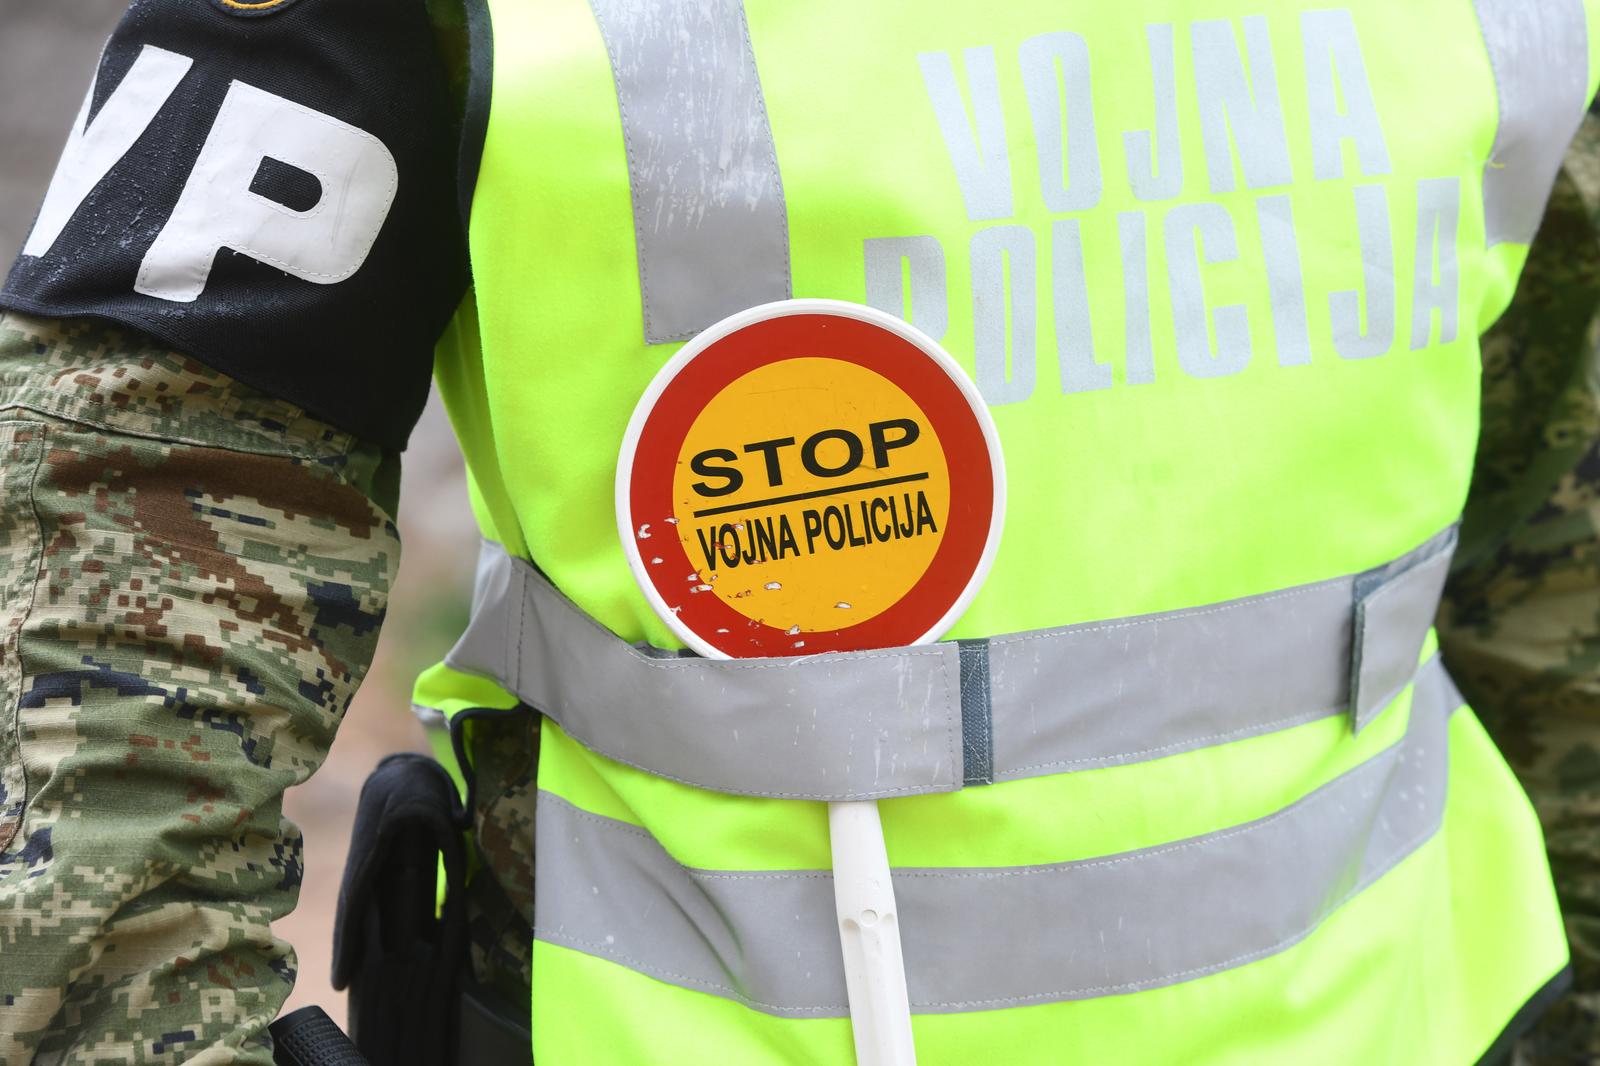 Kroaci, policia kroate kap një ushtar duke transportuar një kosovar që ka bërë hyrje ilegale